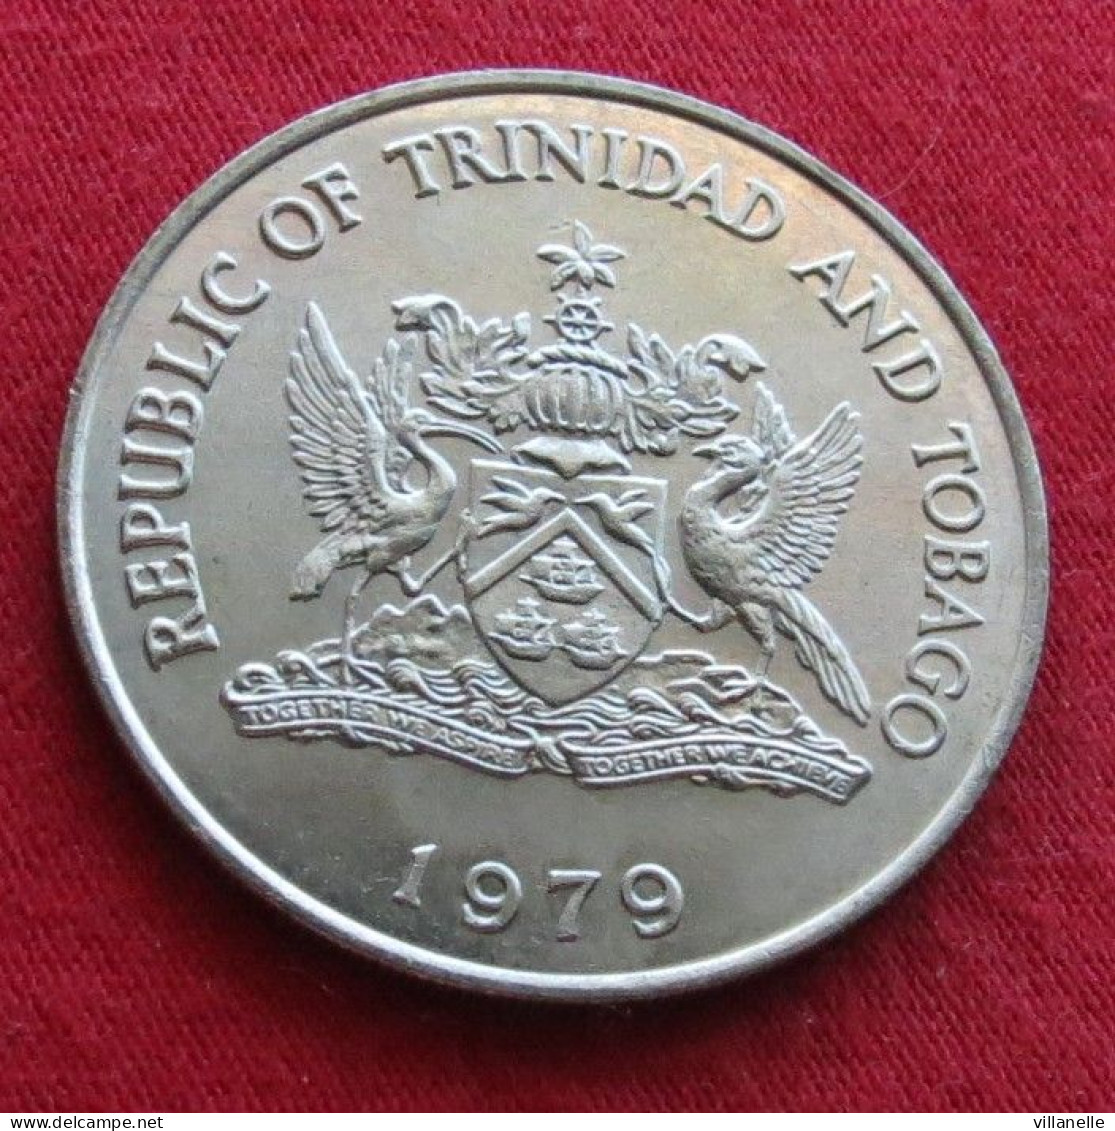 Trinidad & Tobago 1 $ 1979 FAO F.a.o. UNC ºº - Trindad & Tobago